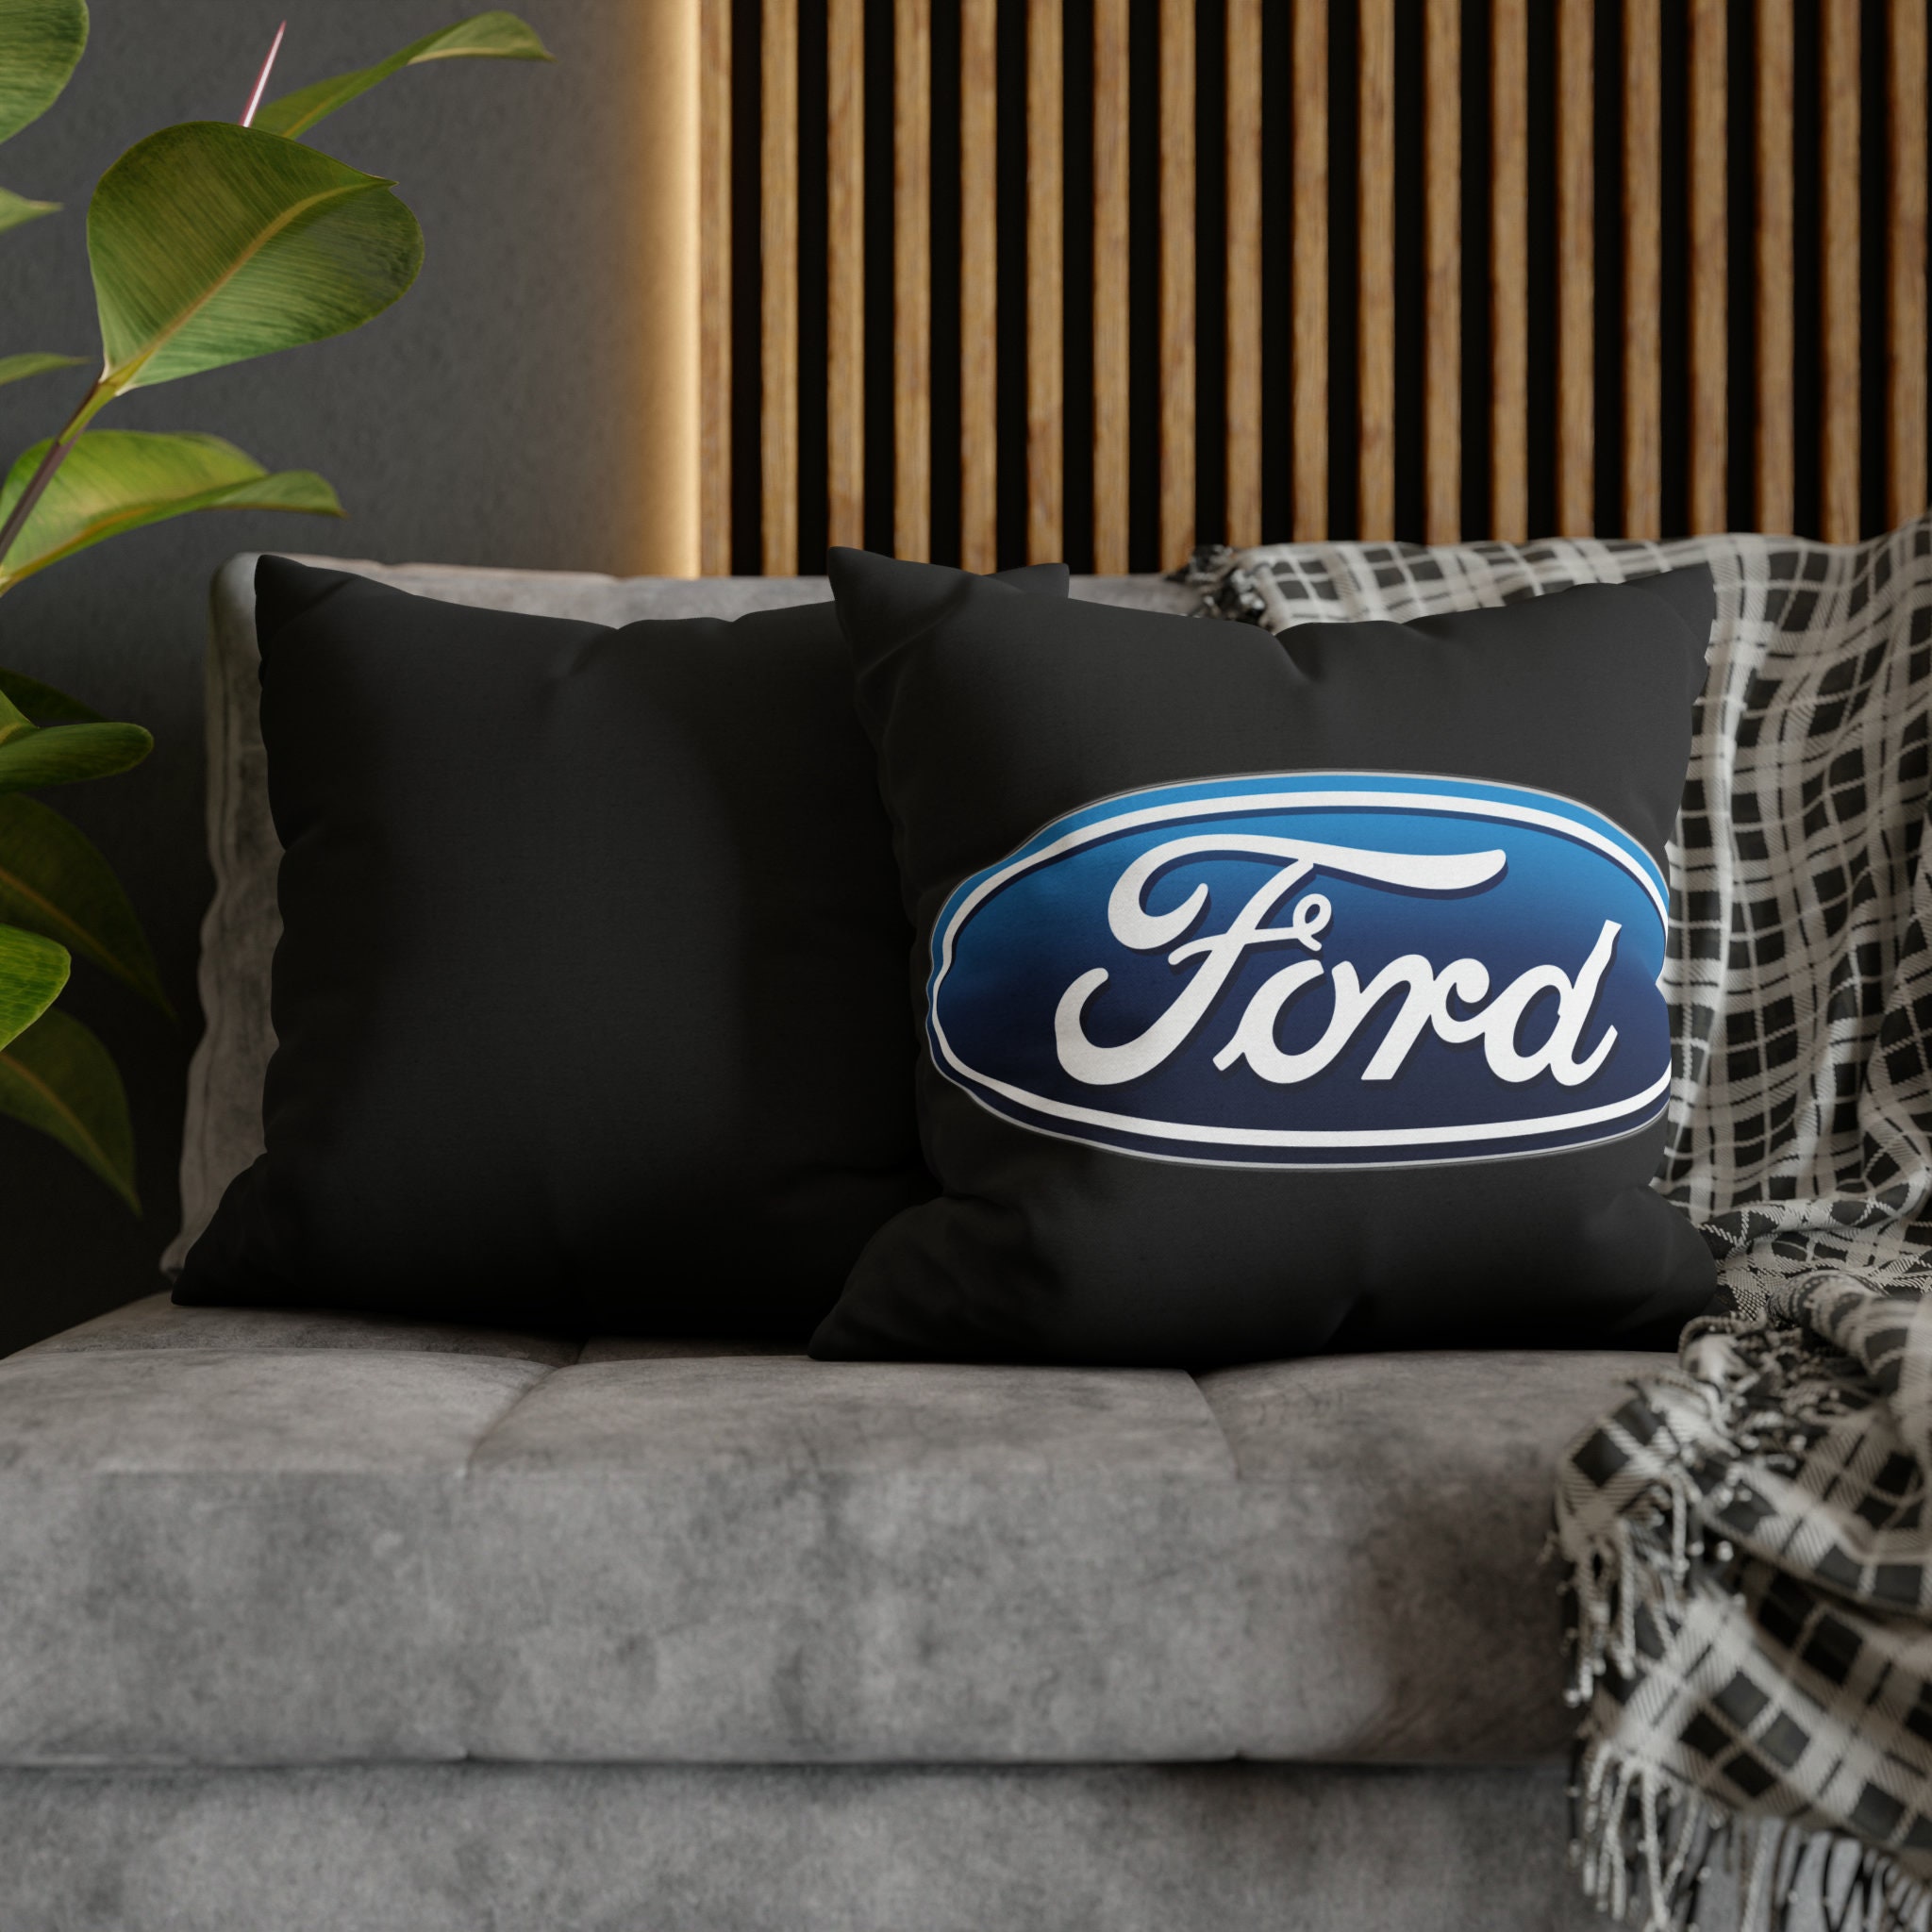 Ford cushions - .de